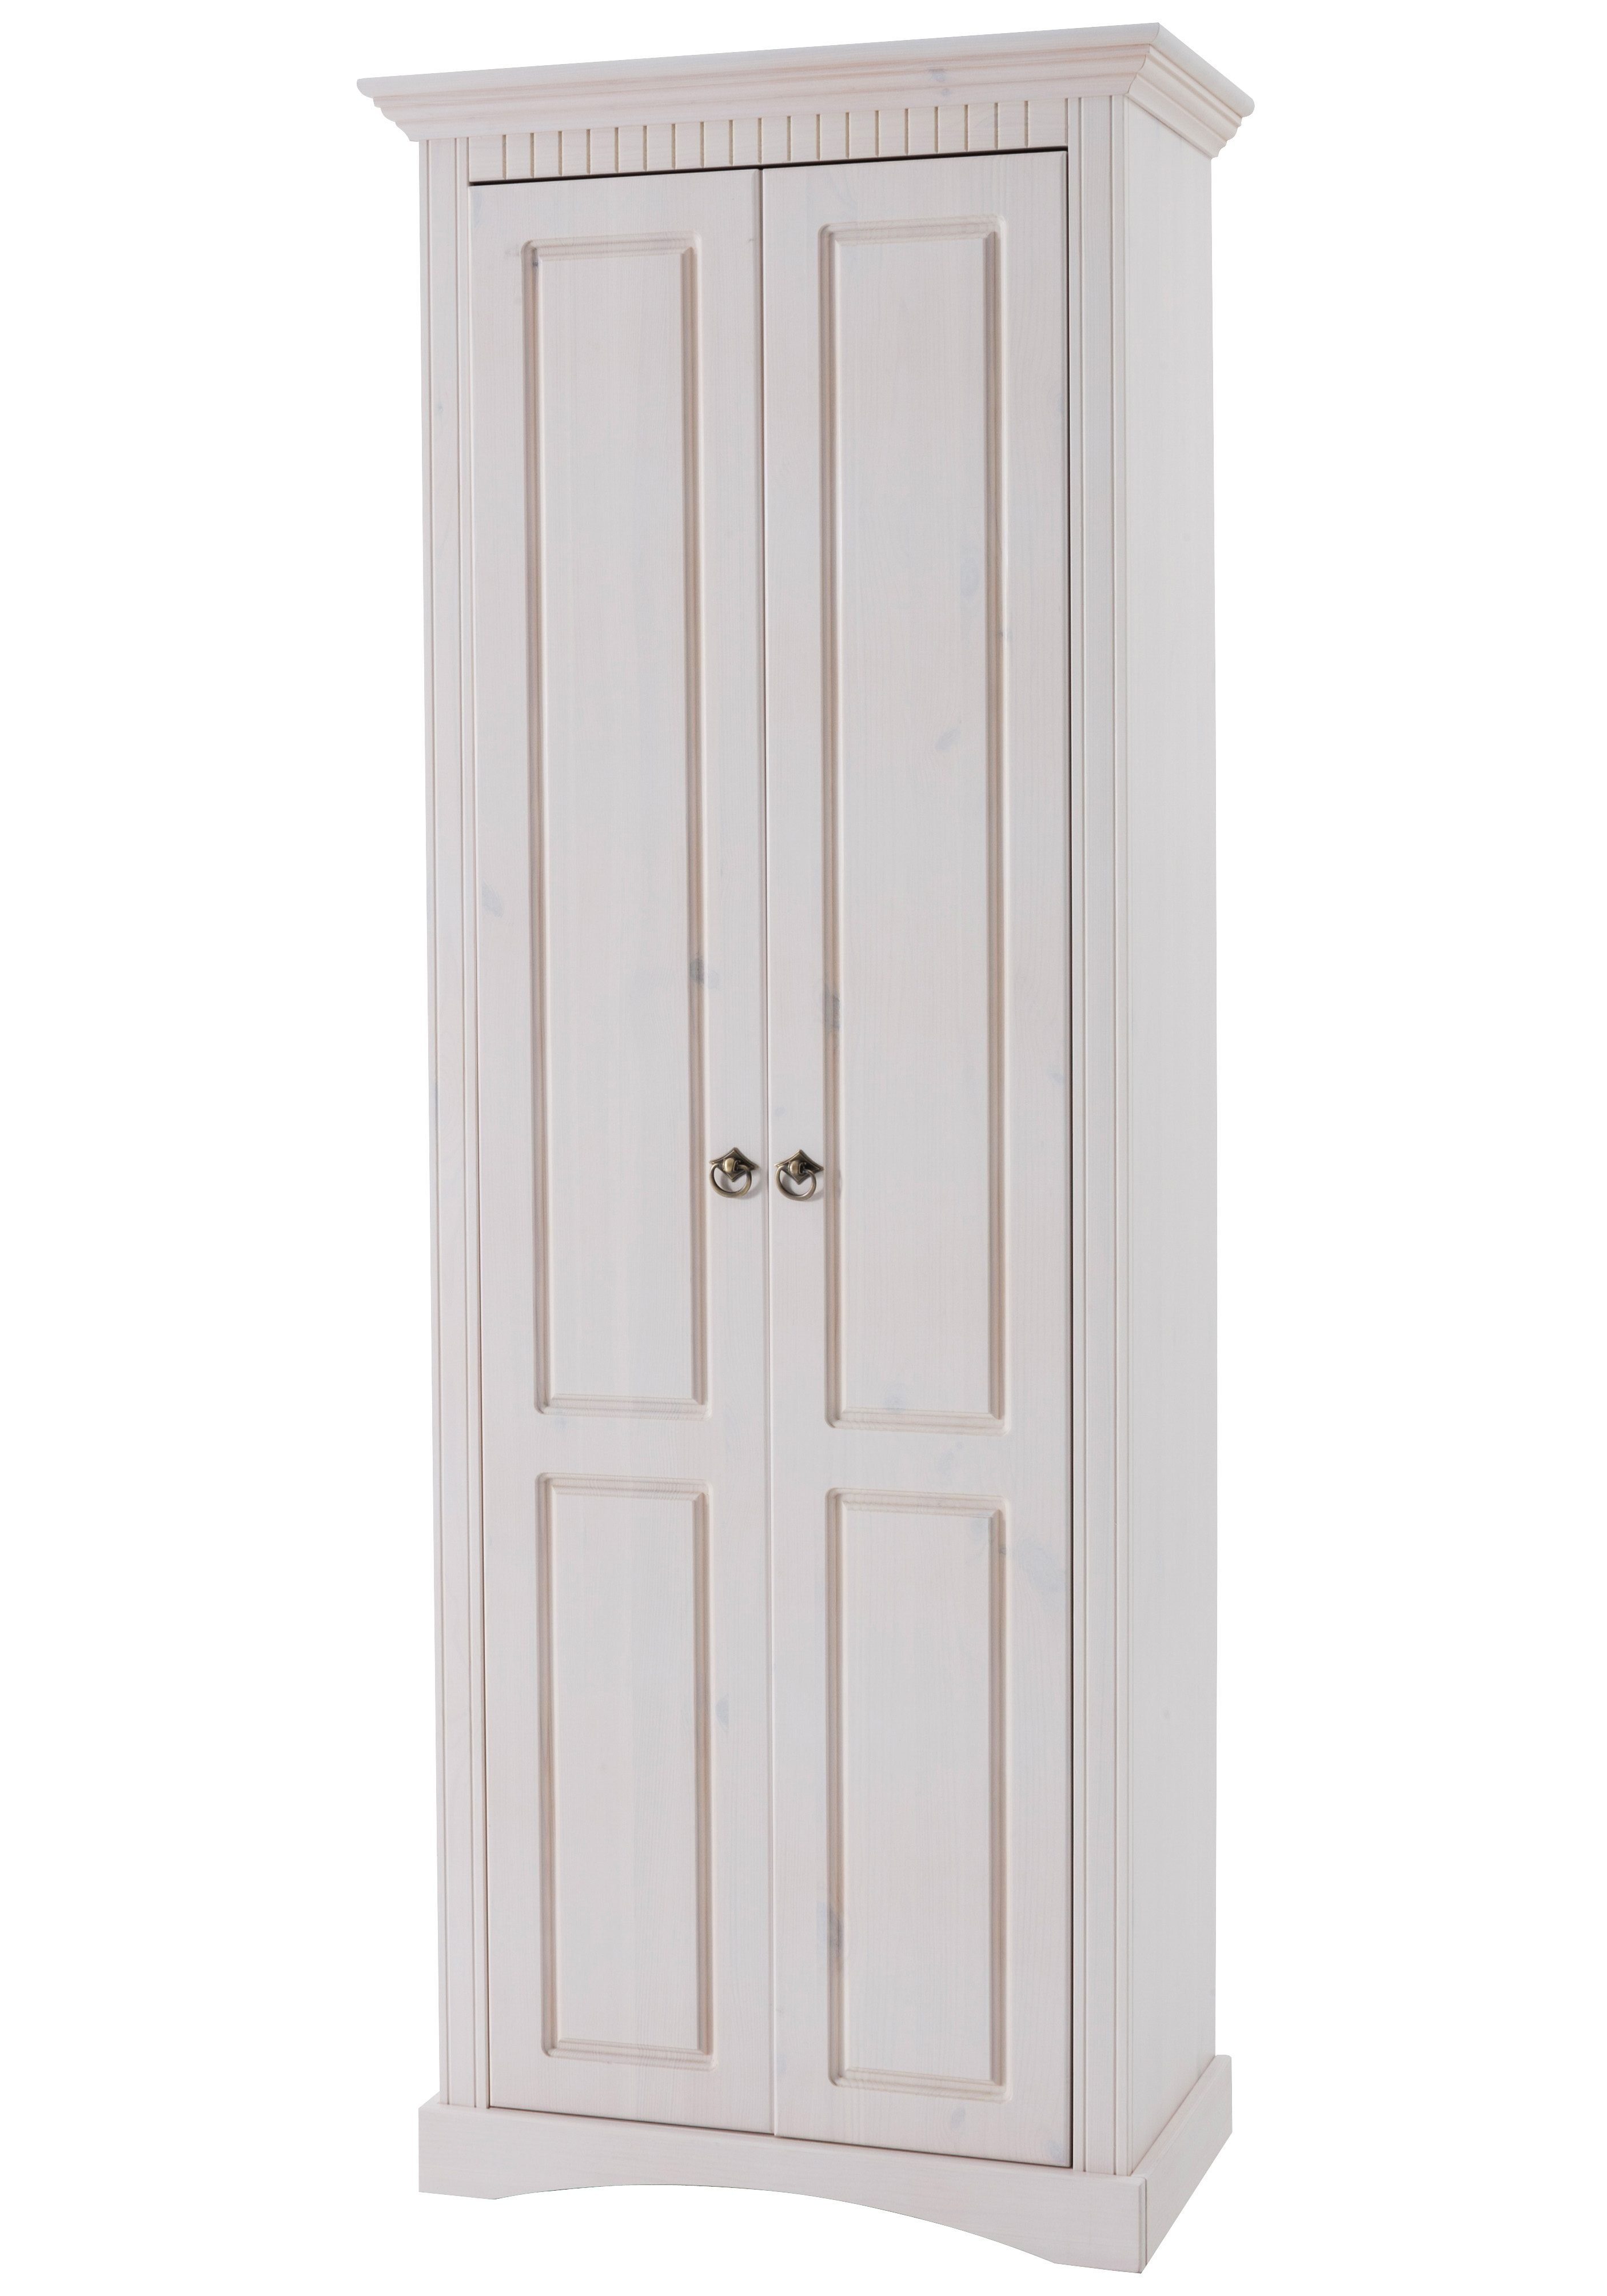 Home affaire Garderobenschrank Rustic aus massiver Kiefer, Breite 71 cm, mit Kassetenoptik